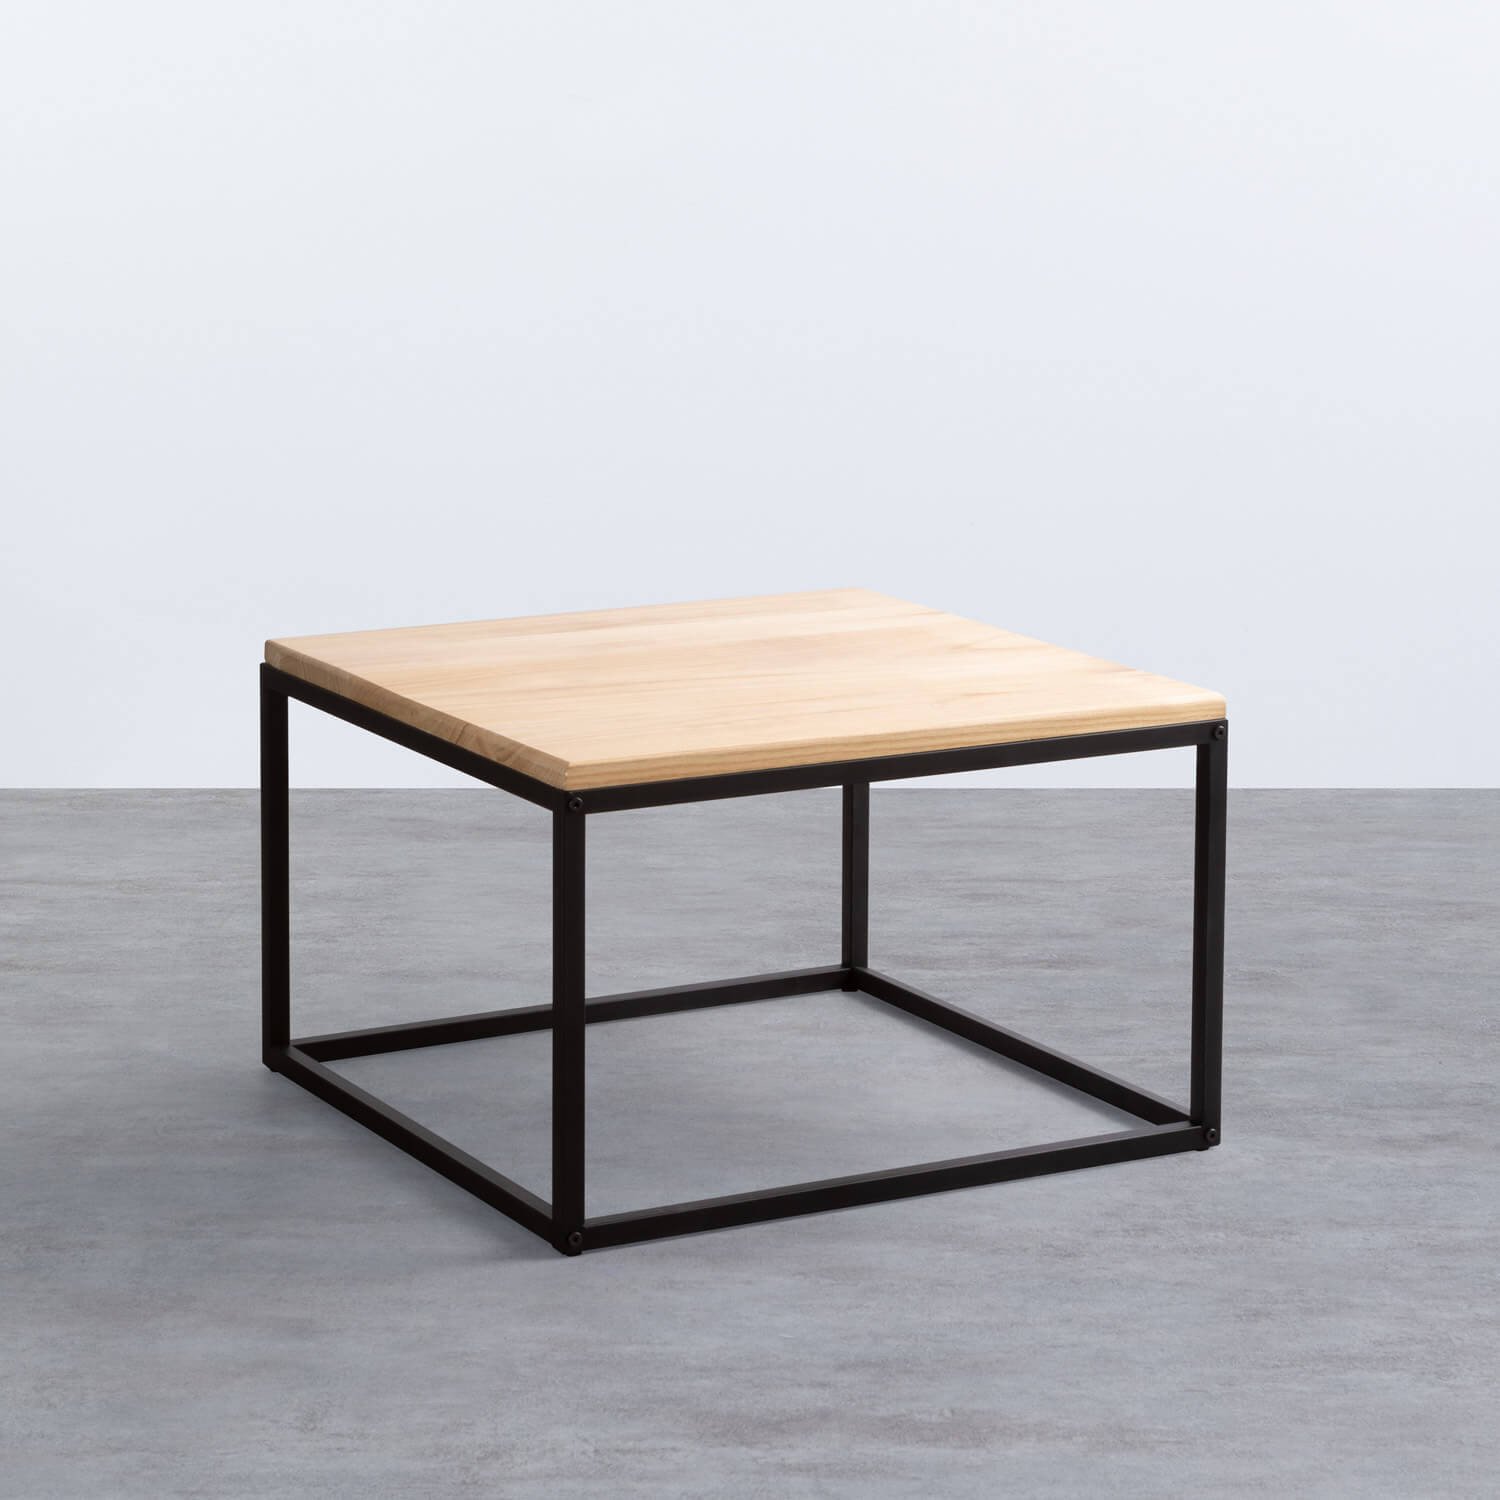 Table basse carrée en bois et métal (60x60 cm) Ferro, image de la gelerie 1